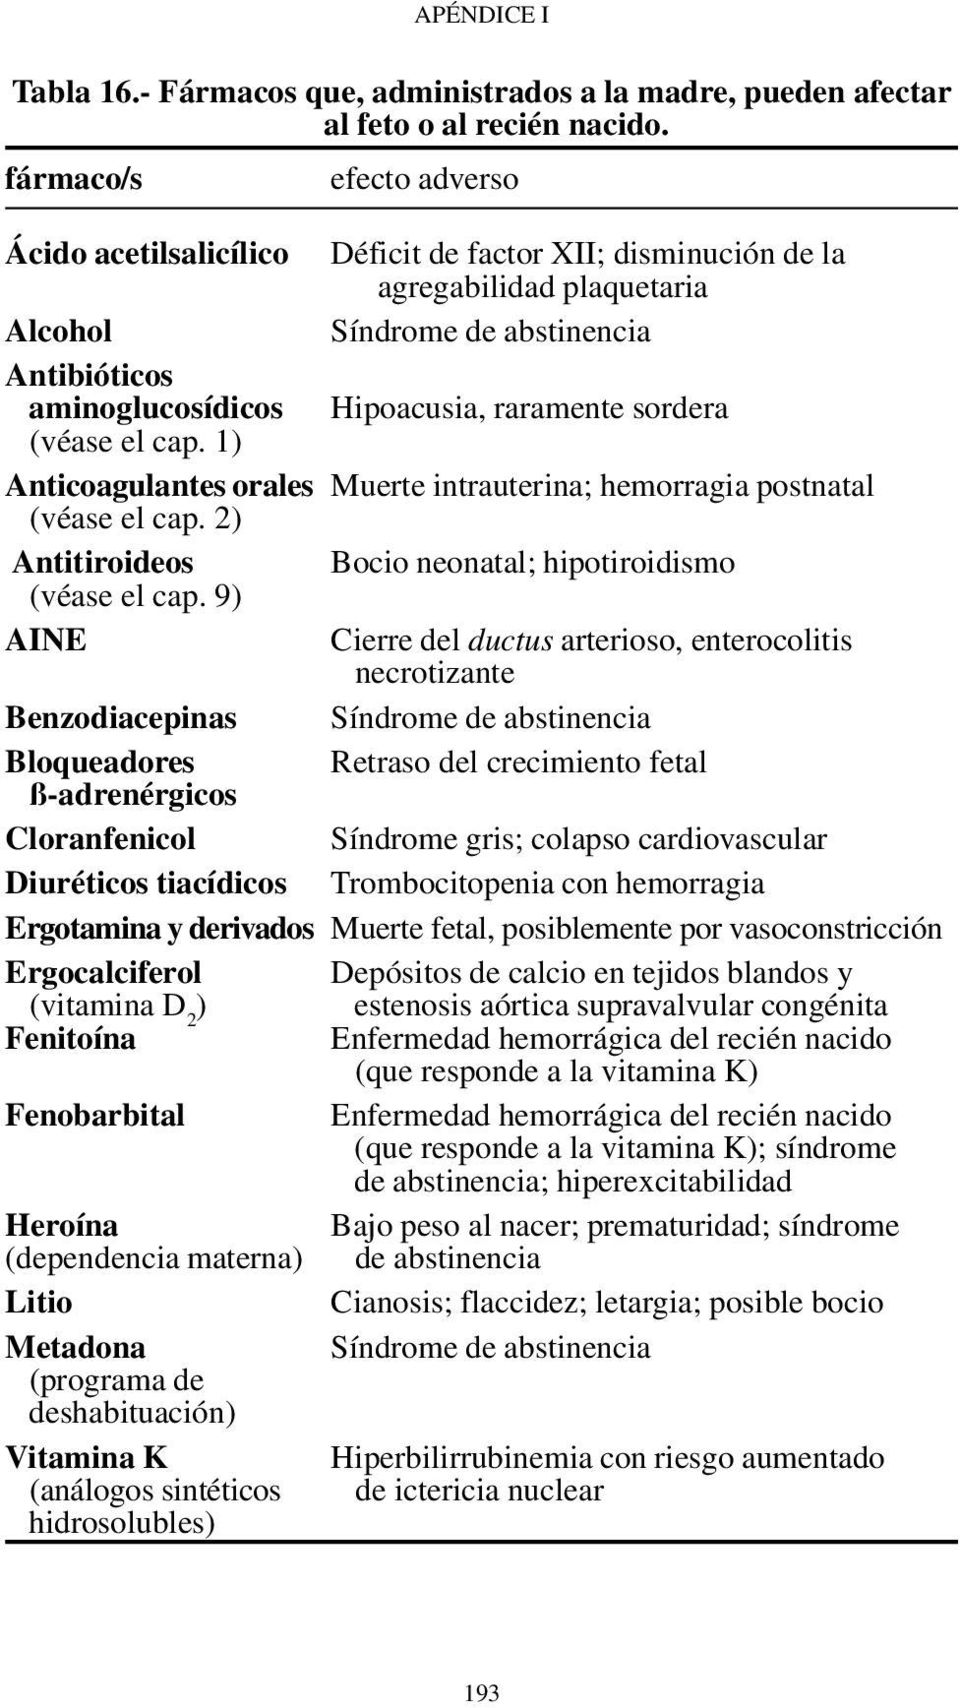 sordera (véase el cap. 1) Anticoagulantes orales Muerte intrauterina; hemorragia postnatal (véase el cap. 2) Antitiroideos Bocio neonatal; hipotiroidismo (véase el cap.